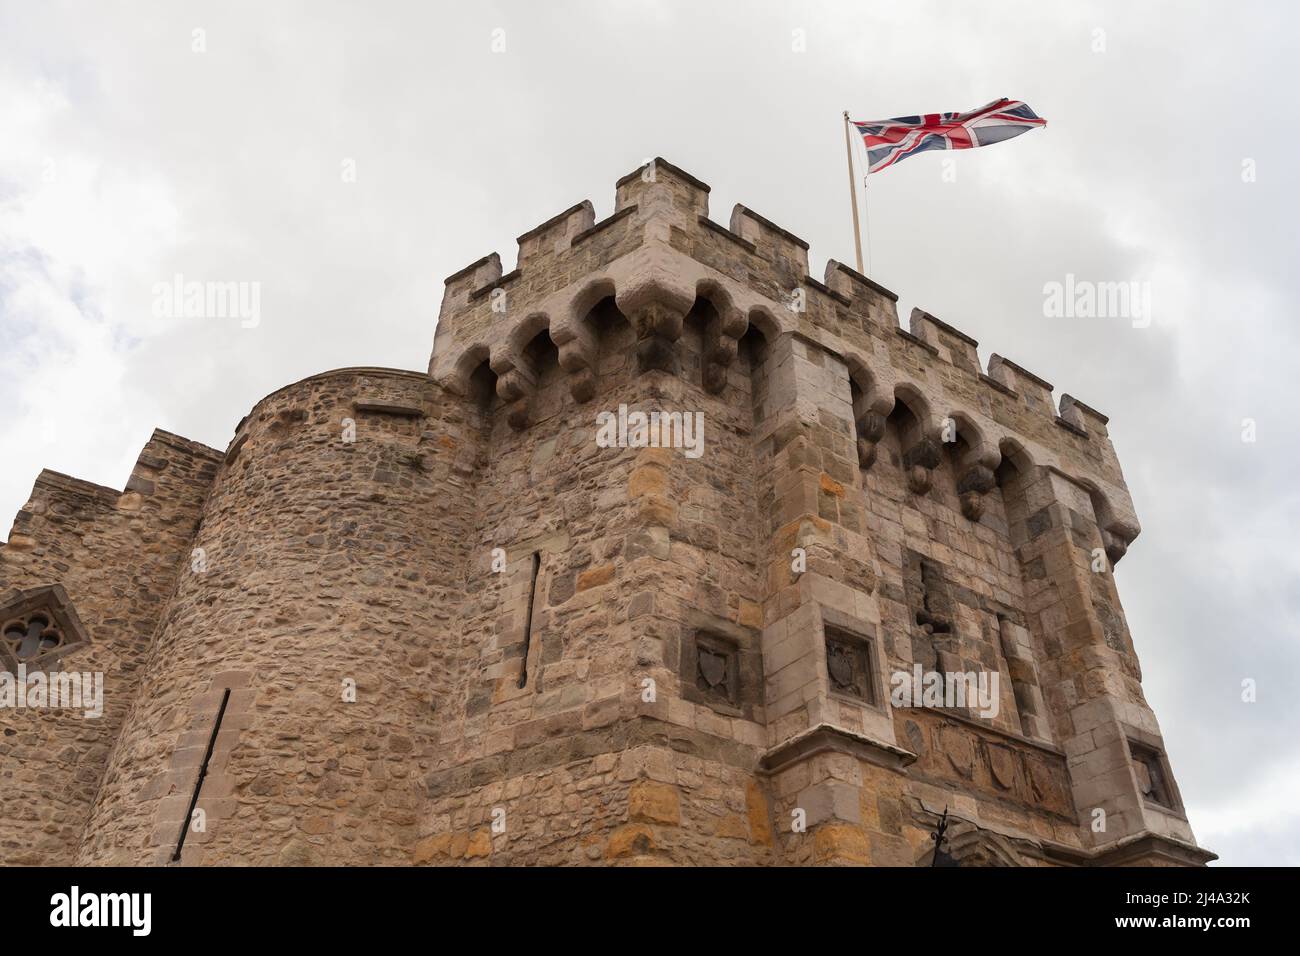 Le drapeau britannique est au sommet du Bargate. C'est un portier médiéval dans la ville de Southampton, en Angleterre. Construit à l'époque normande dans le cadre du Banque D'Images